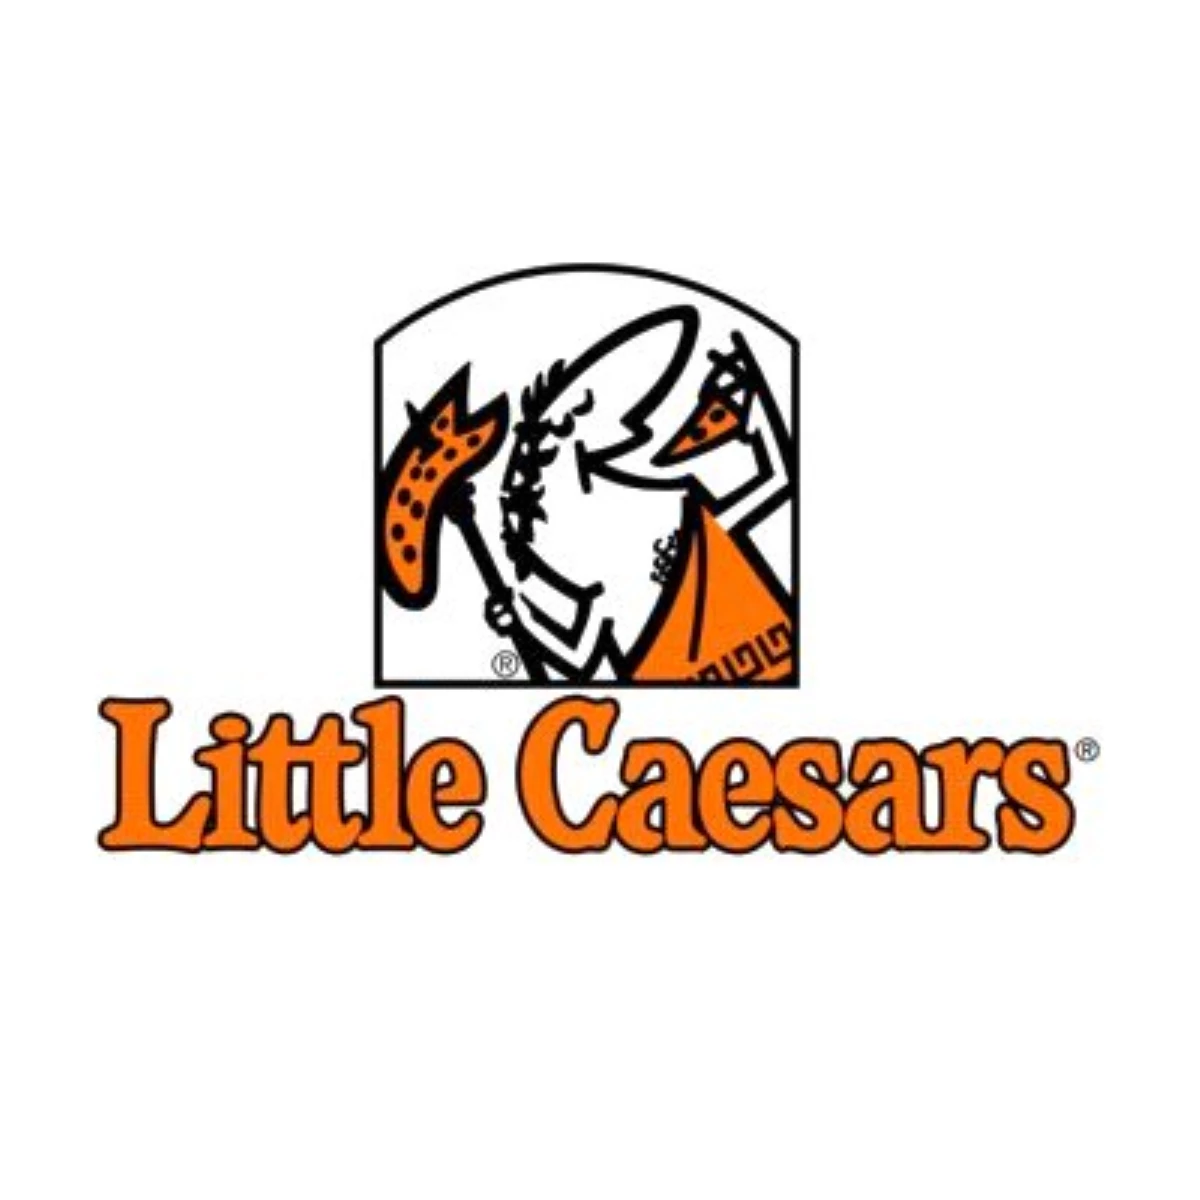 Little Caesars, Kayserili Yatırımcıları Bekliyor